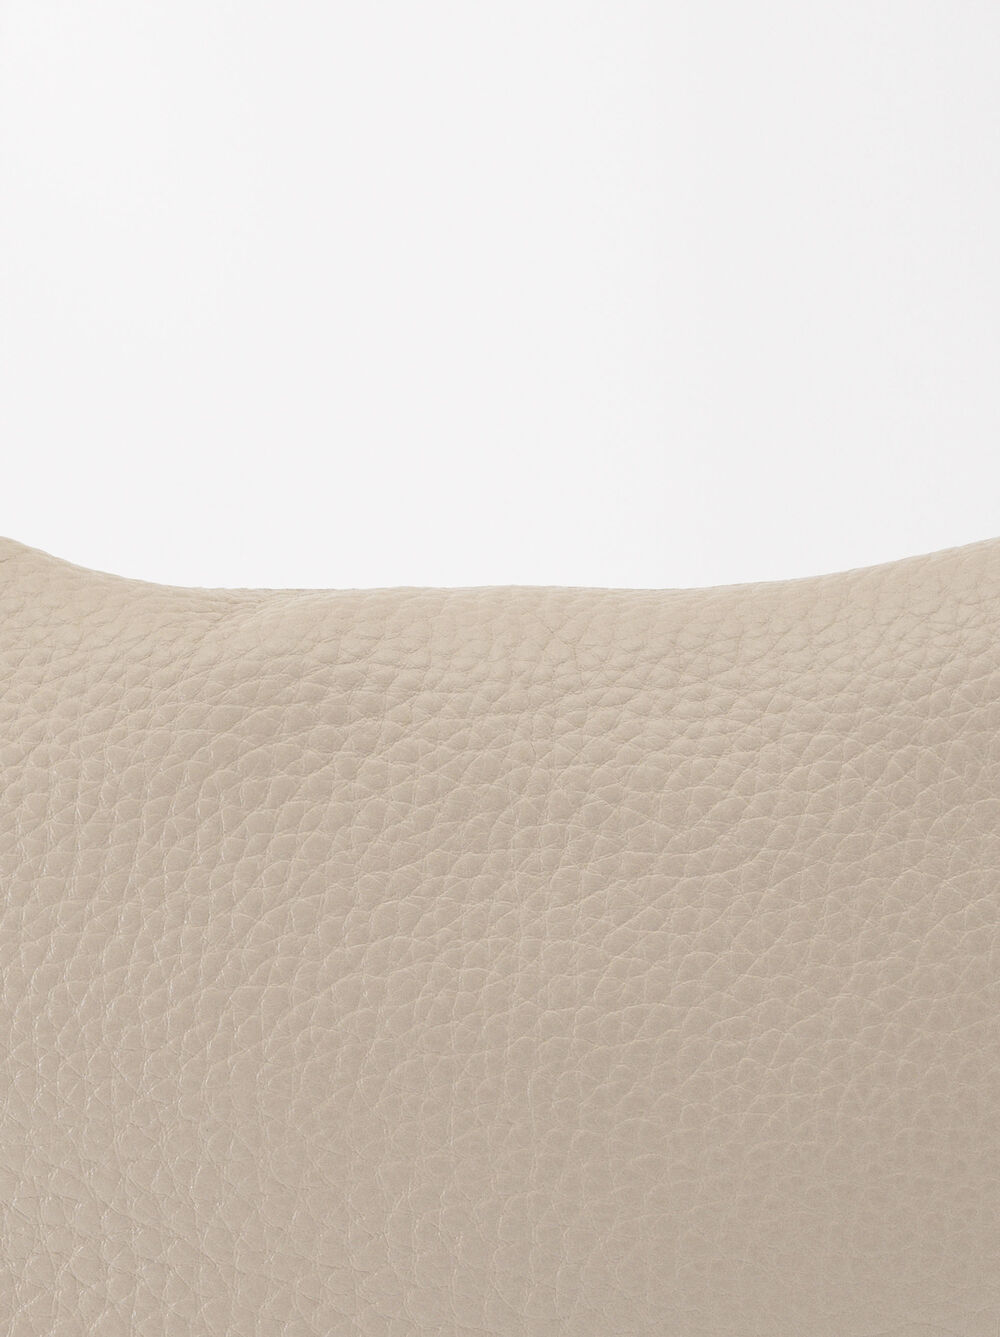 Personalized Leather Shoulder Bag image number 4.0